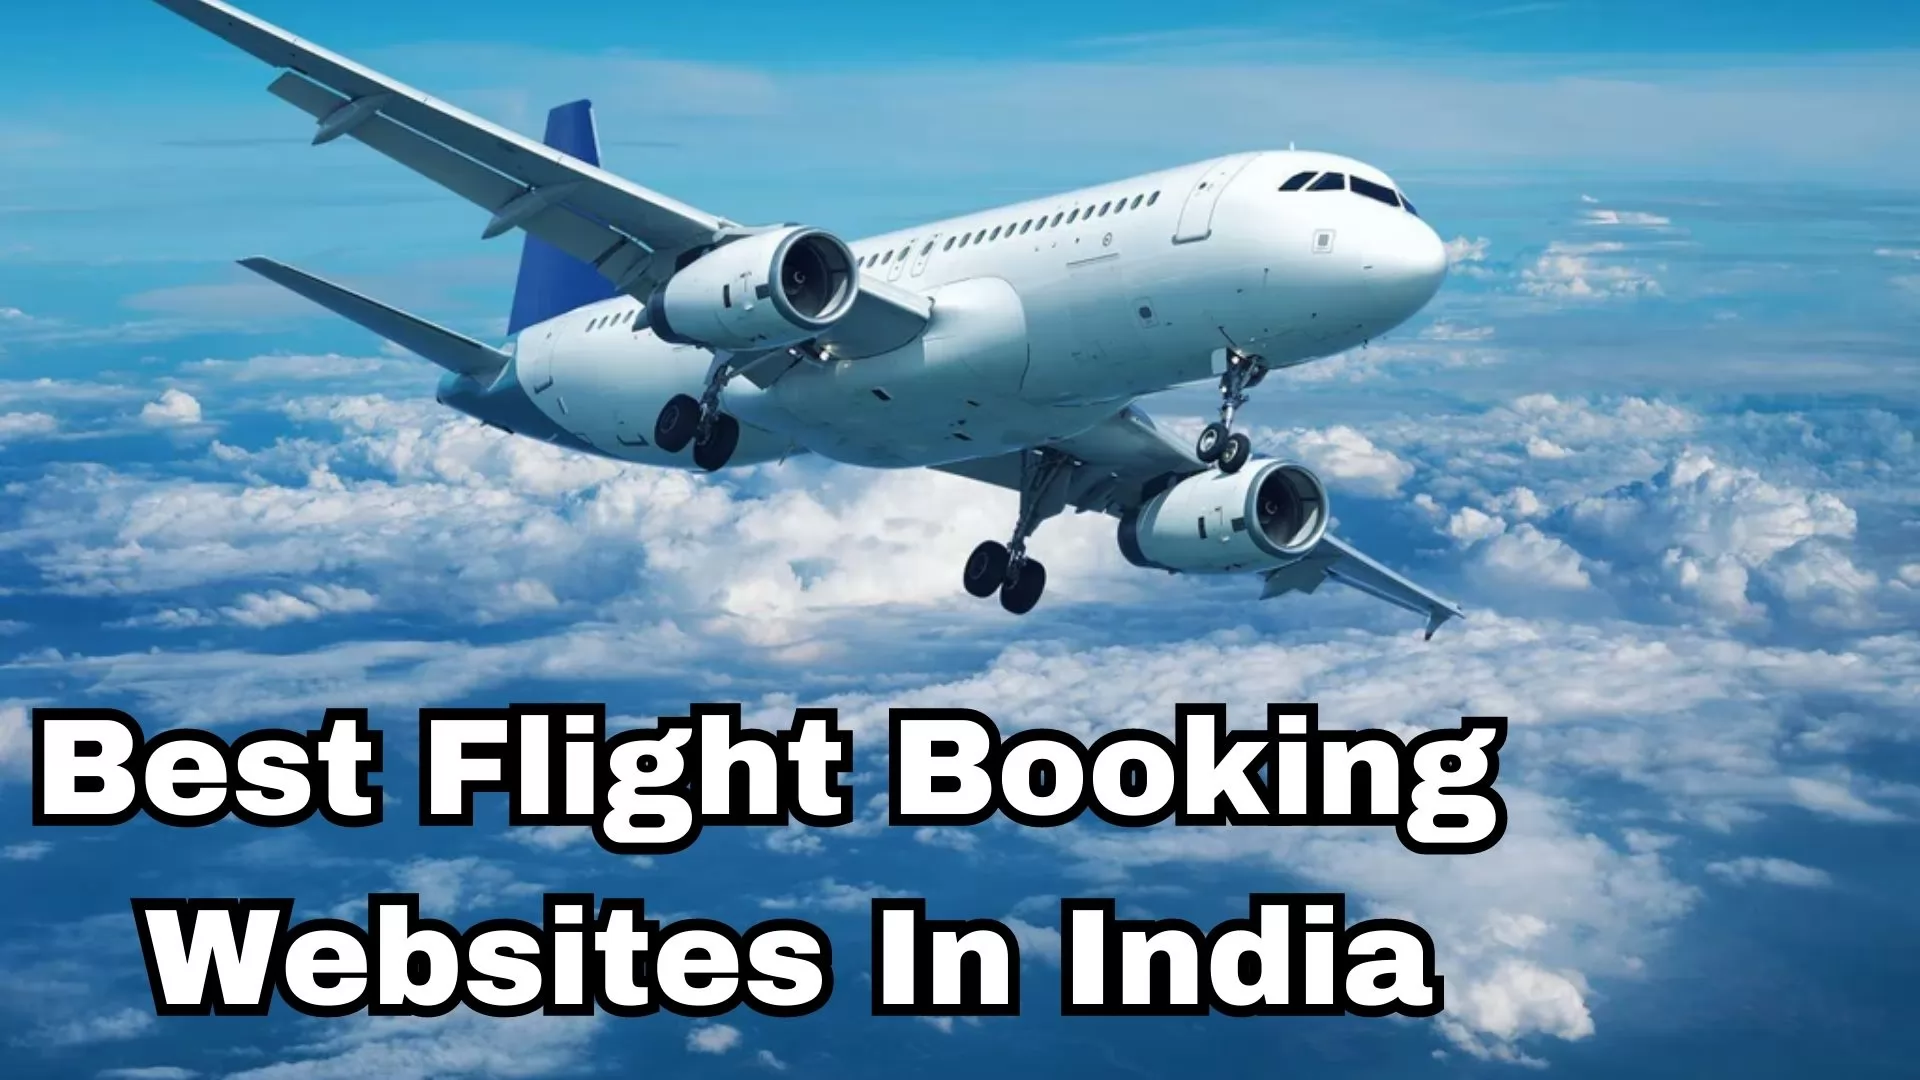 Best Flight Booking Websites in India 